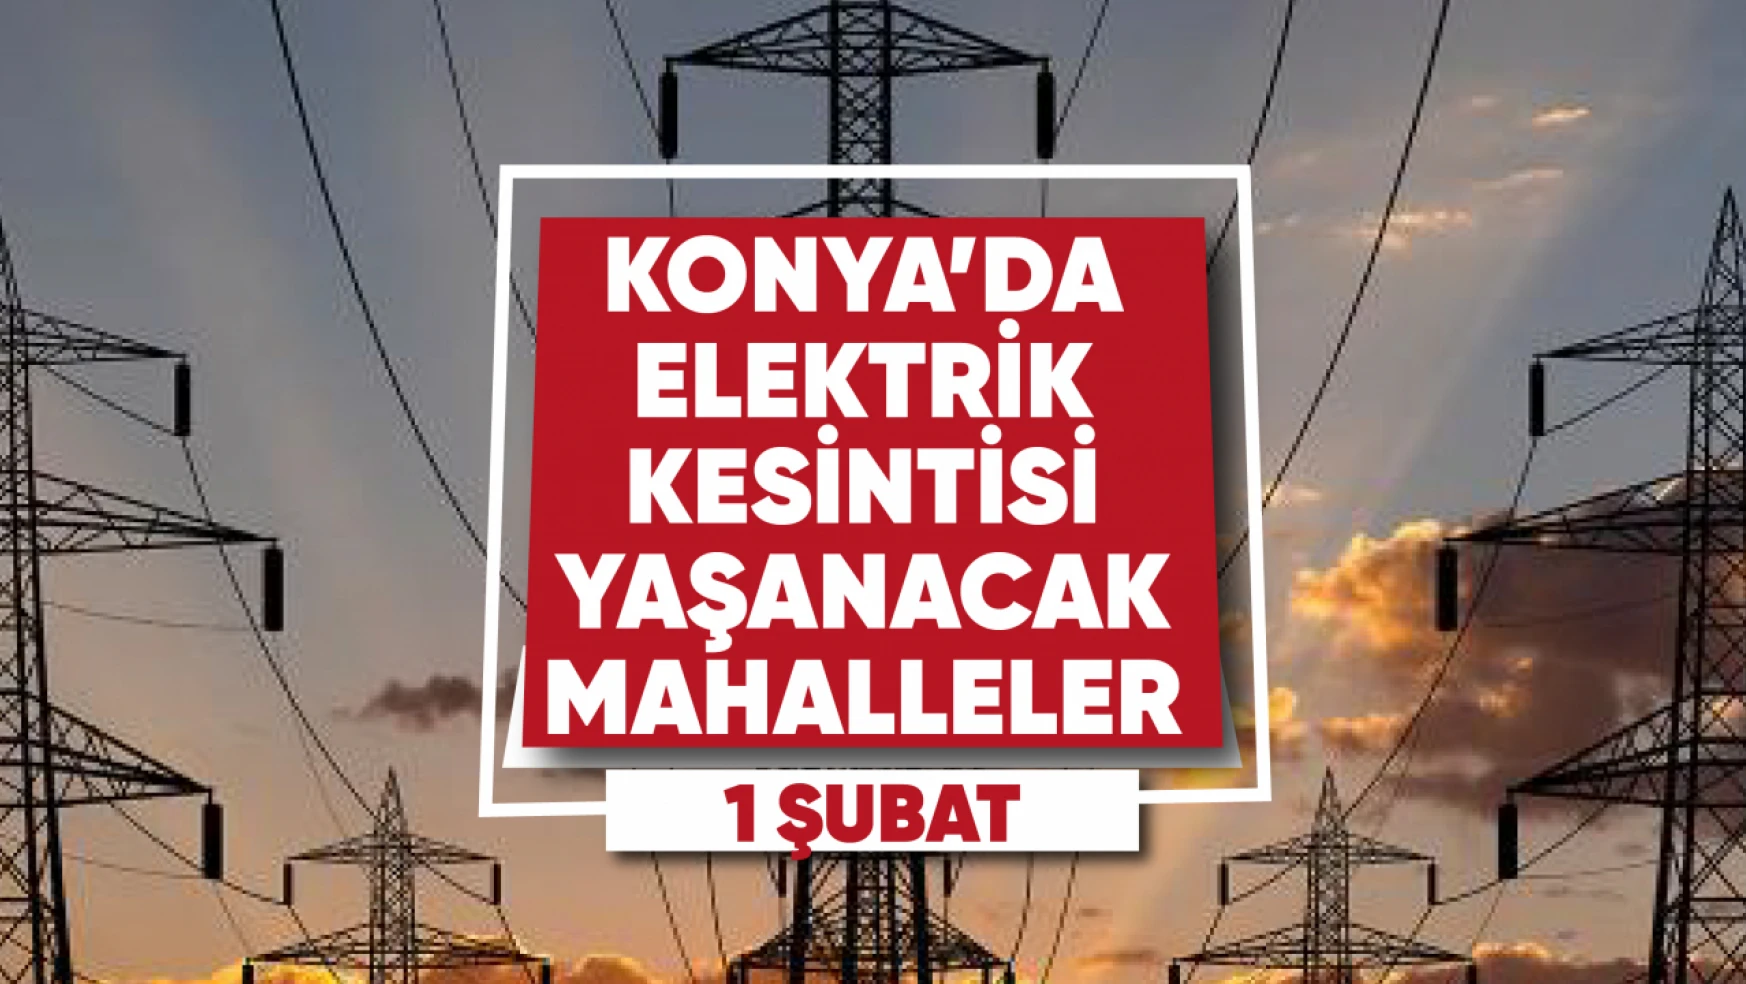 Konya'da elektrik kesintisi yaşanacak mahalle ve sokaklar (1 Şubat 2023)